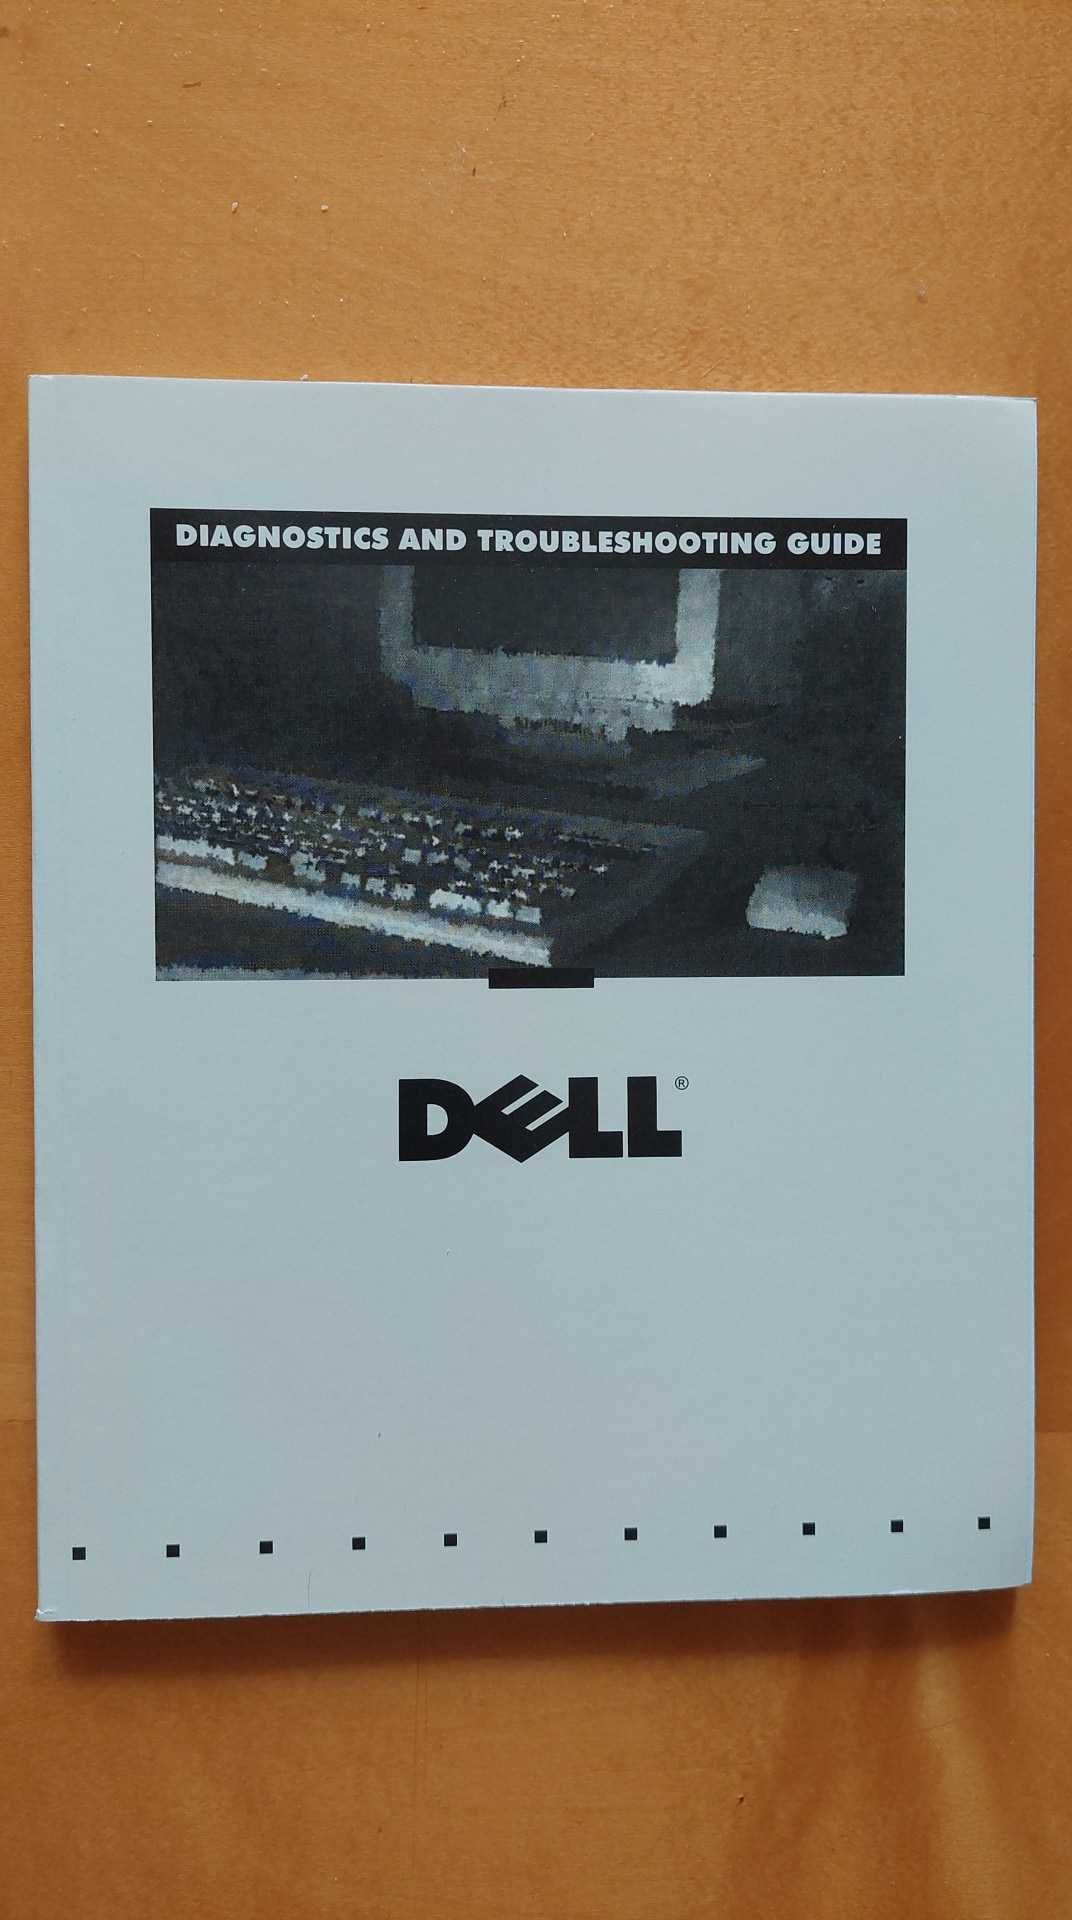 Dokumentacja do komputera Dell Optiplex Gn / Gn+